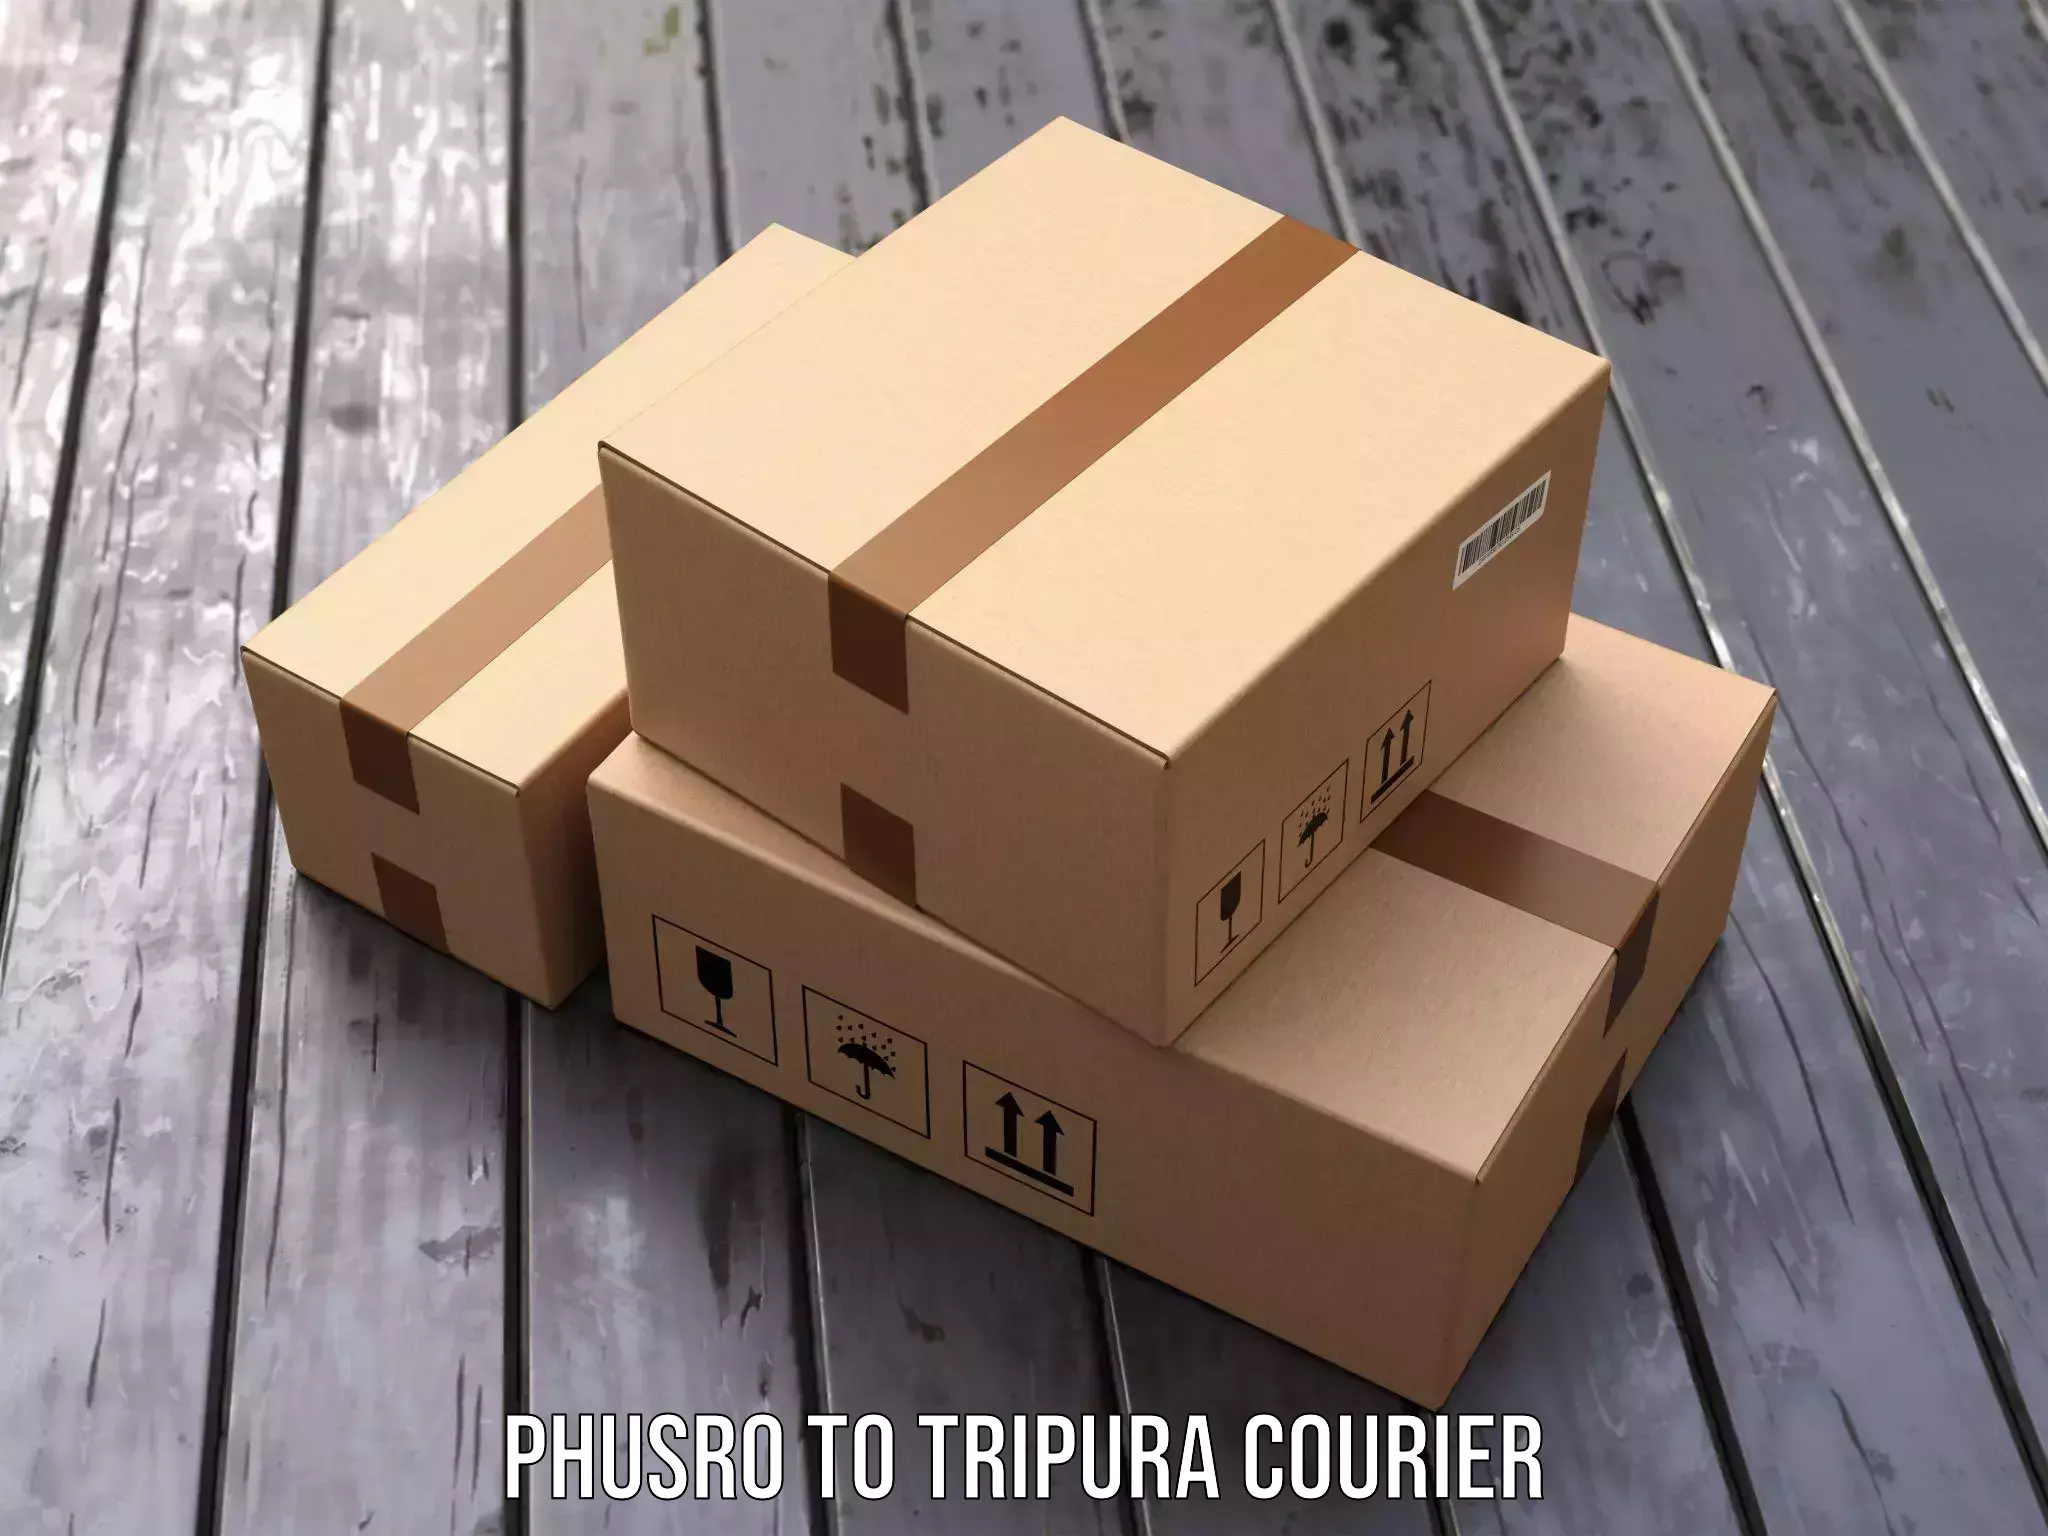 24-hour courier services Phusro to Tripura